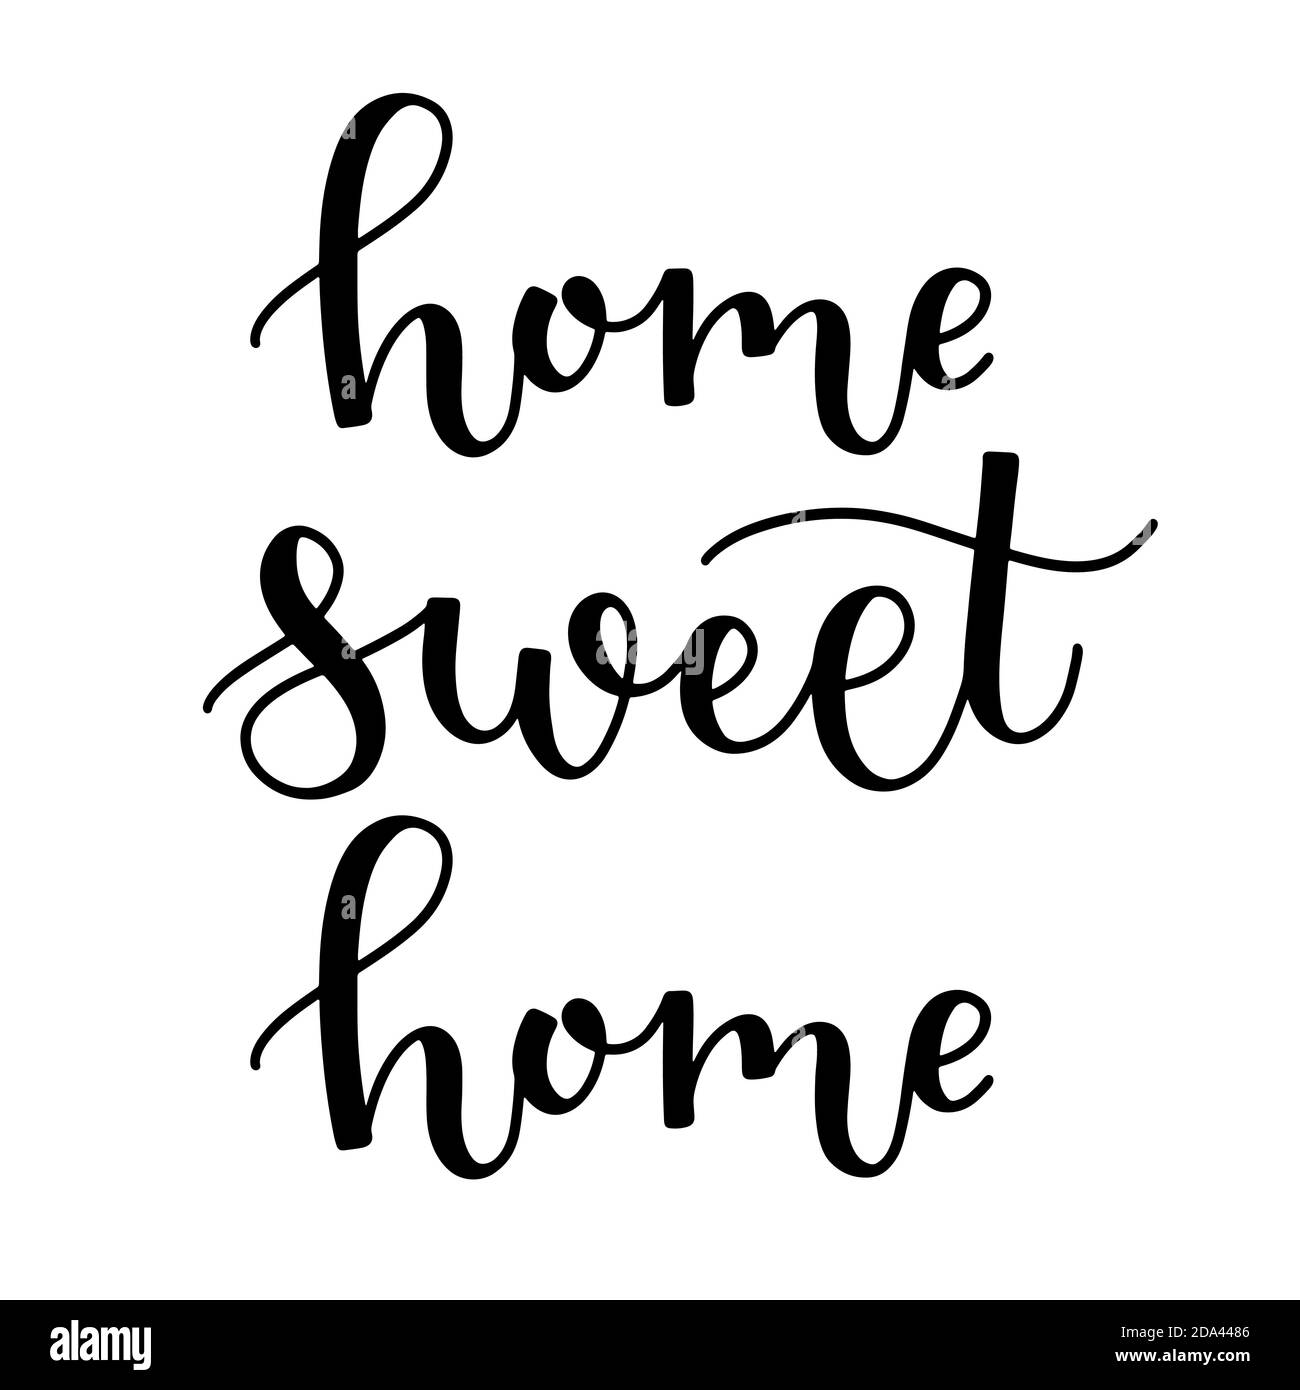 Home dolce casa tratto a mano inchiostro scritta in nero isolato su sfondo bianco. Accogliente calligrafia a pennello per la decorazione domestica illustrazione vettoriale. Illustrazione Vettoriale